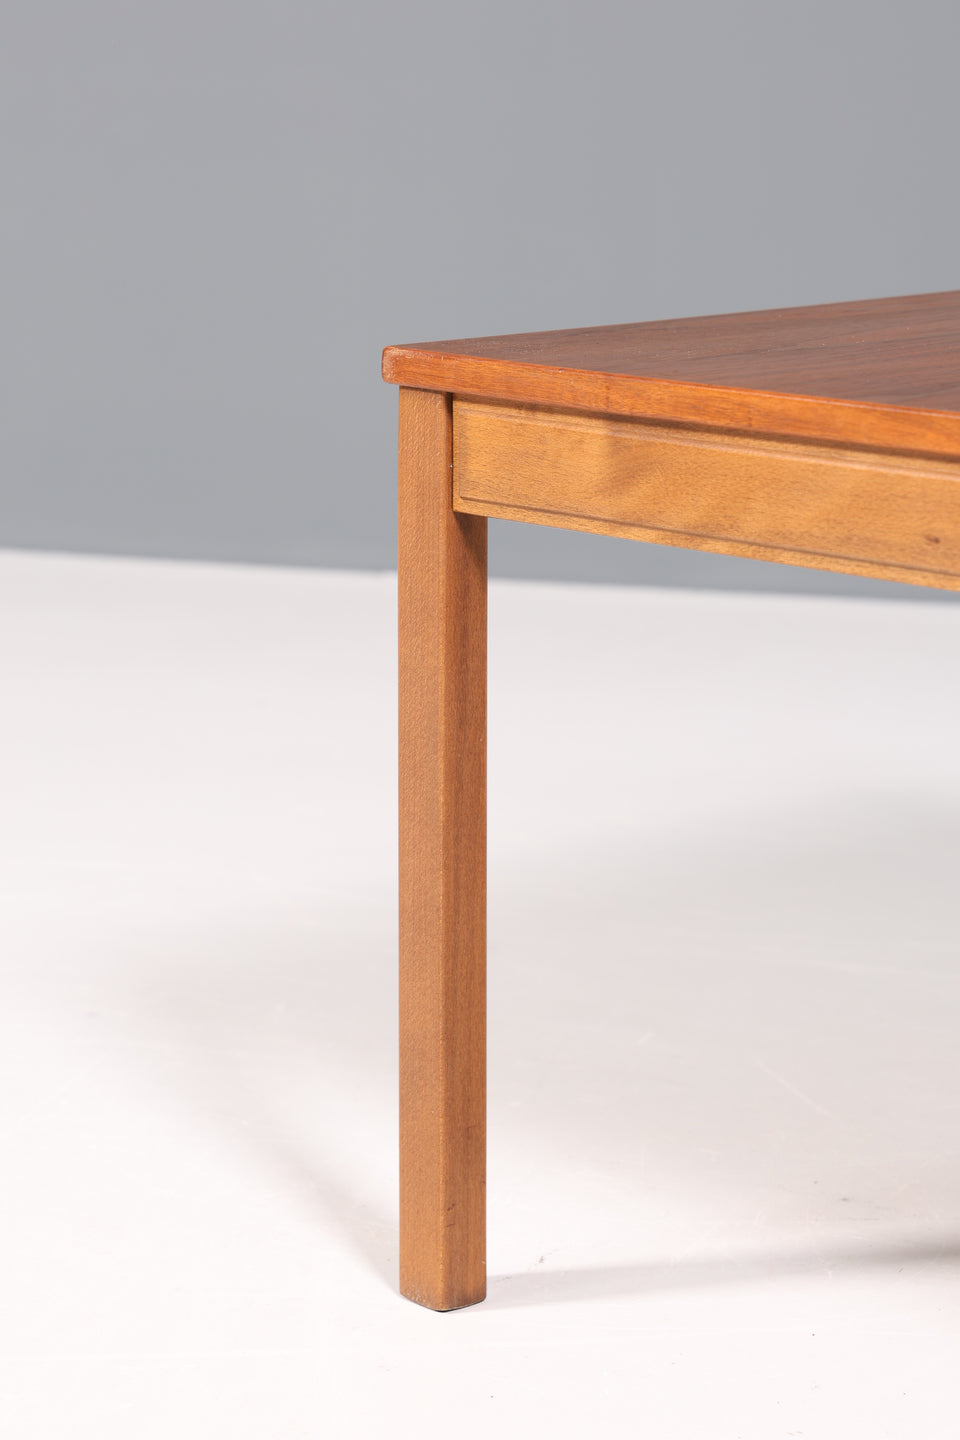 Wunderschöner Mid Century Teak Holz Tisch dänischer Couchtisch Table Made in Denmark Wohnzimmertisch